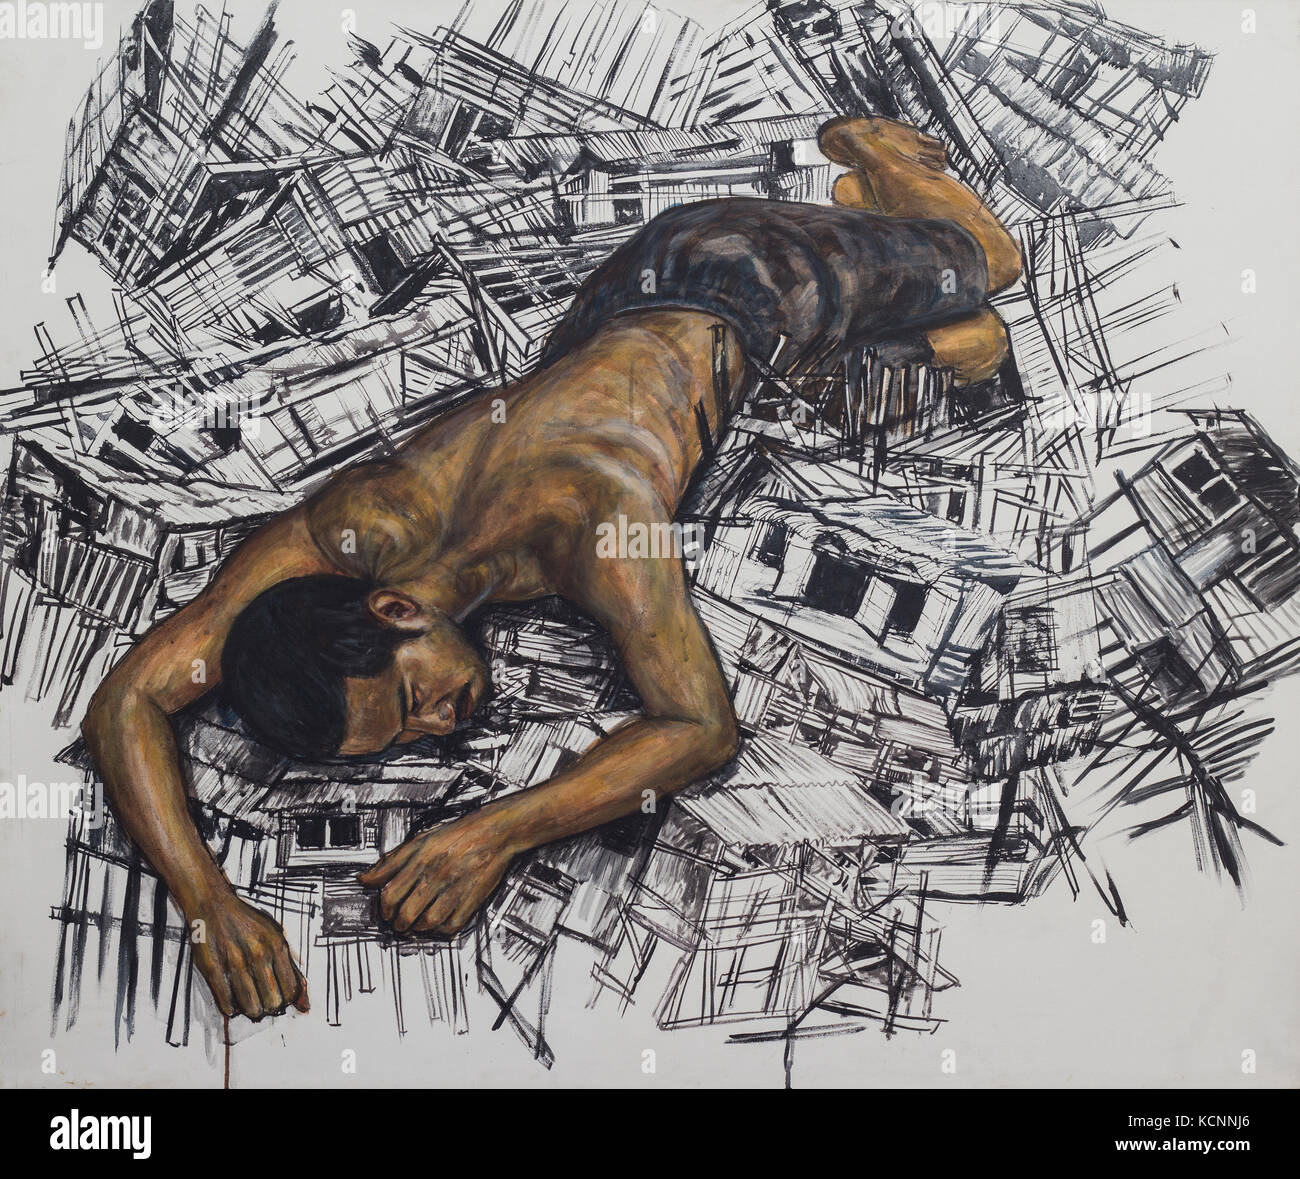 Asian man reclining sur maison en bois,dommage painintg Acrylique et encre noire sur toile Banque D'Images